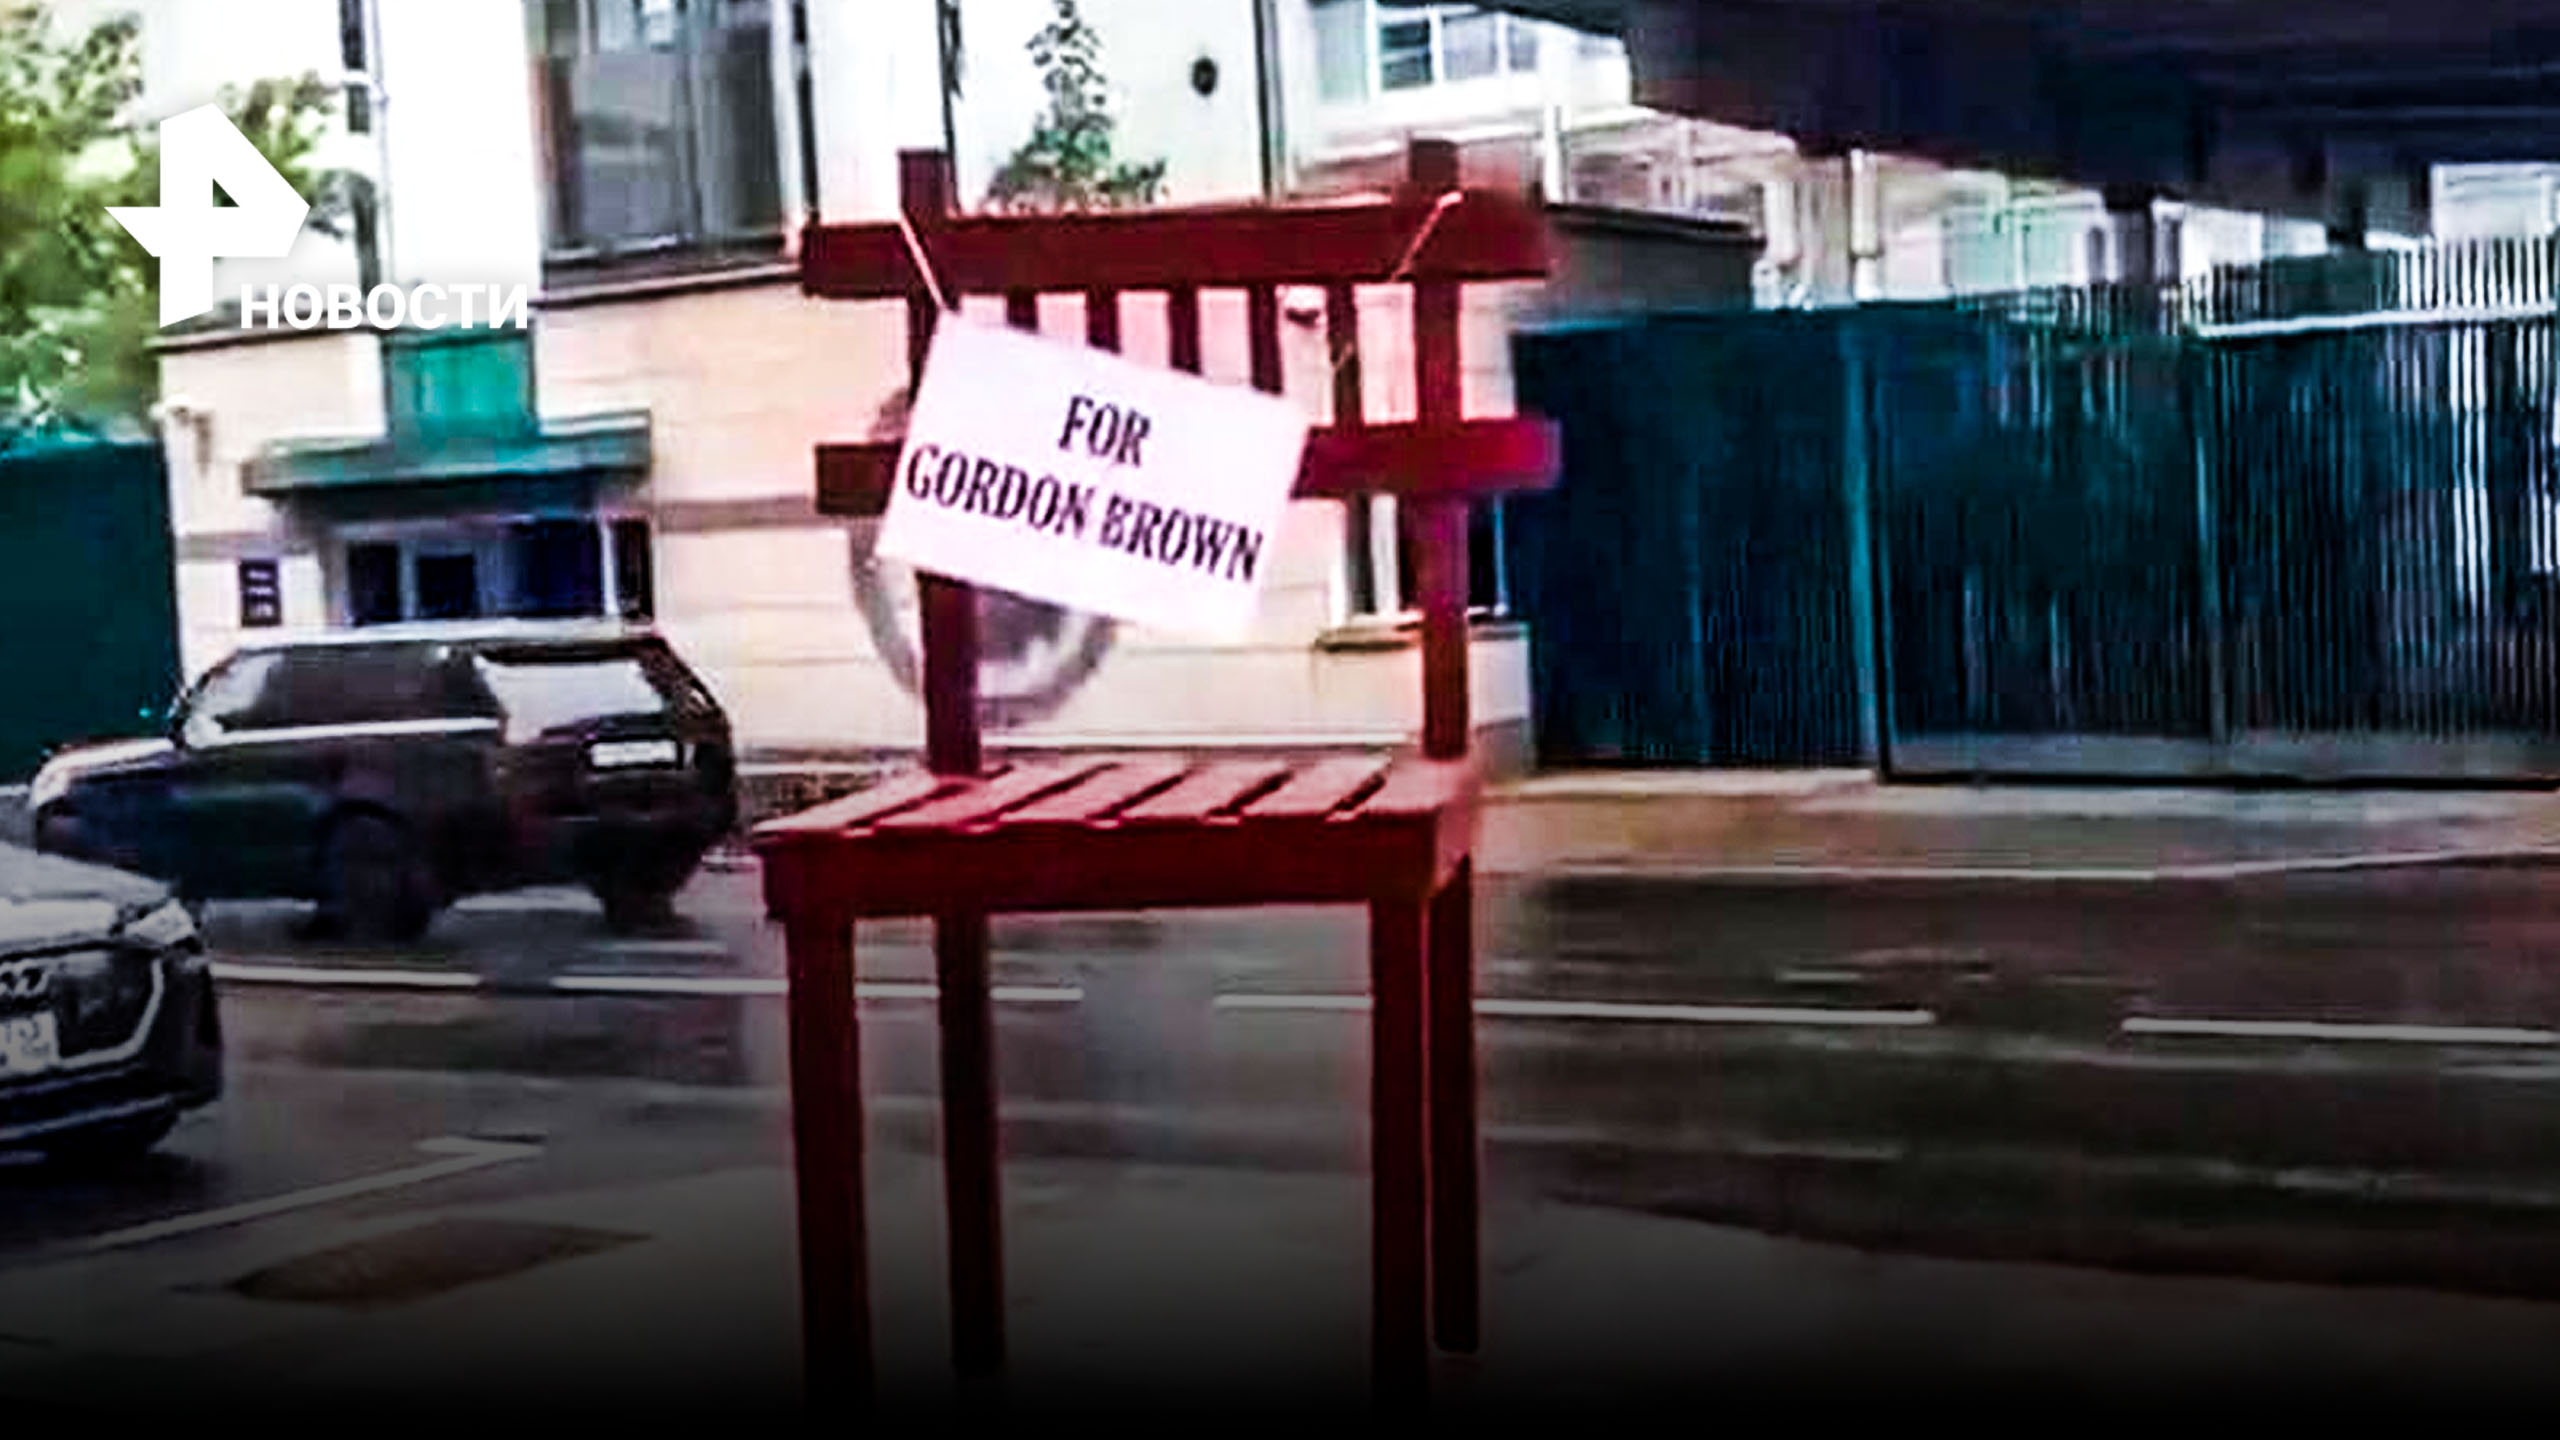 Огромный стул "для Гордона Брауна" установили у посольства Великобритании в Москве / РЕН Новости